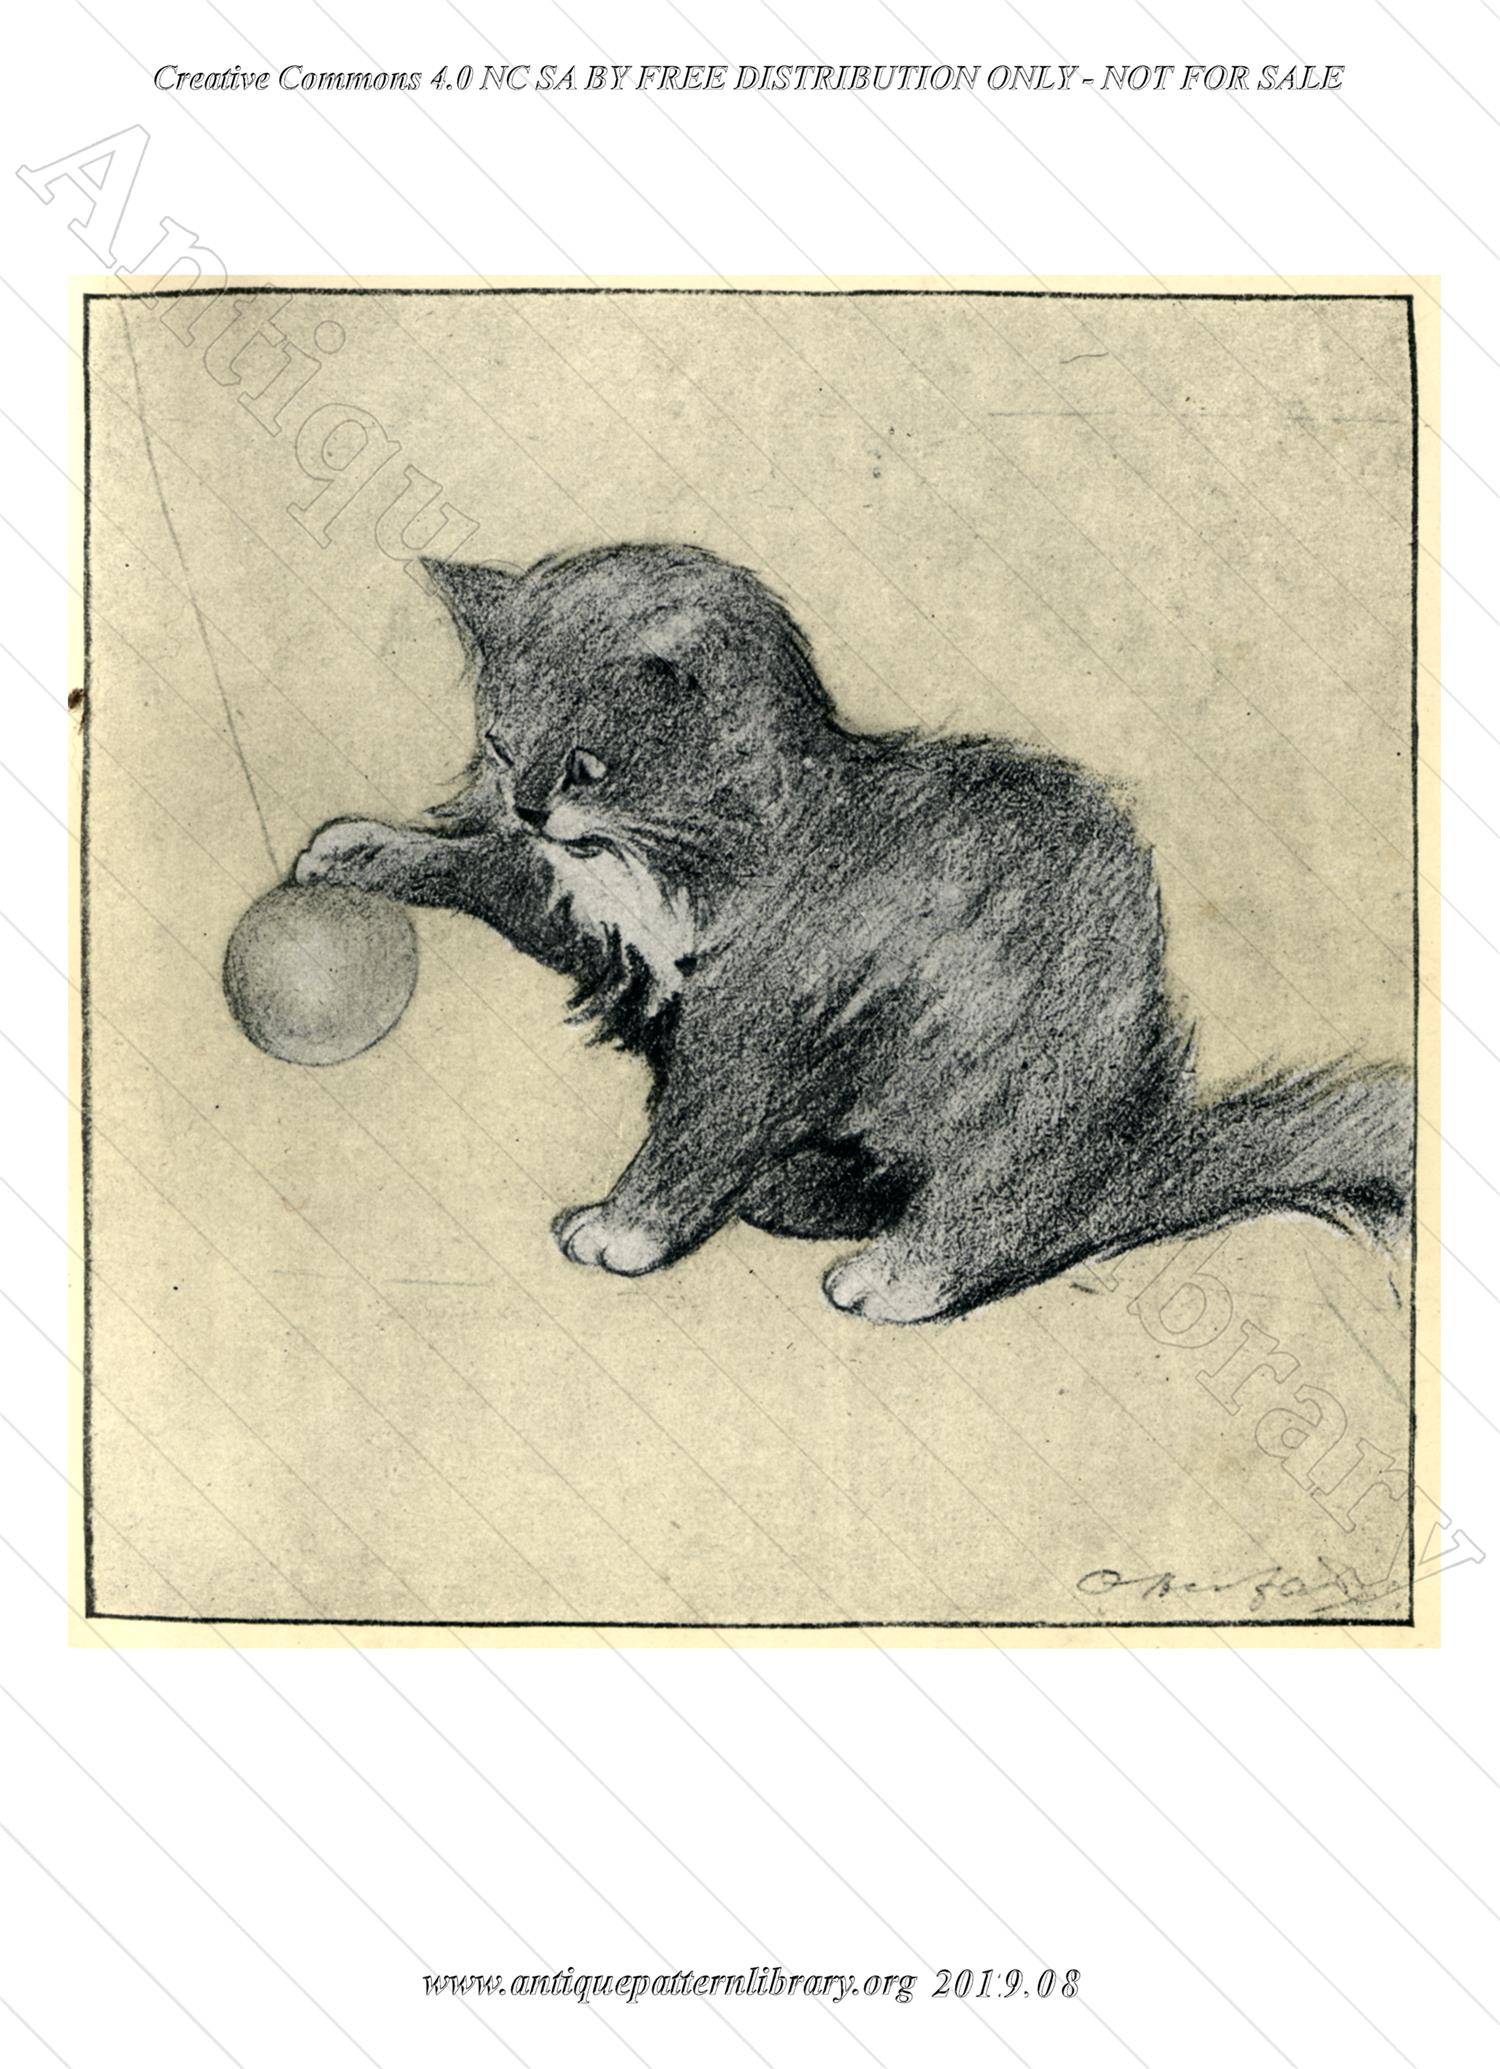 I-WM008 The Rubyiat of a Persian Kitten